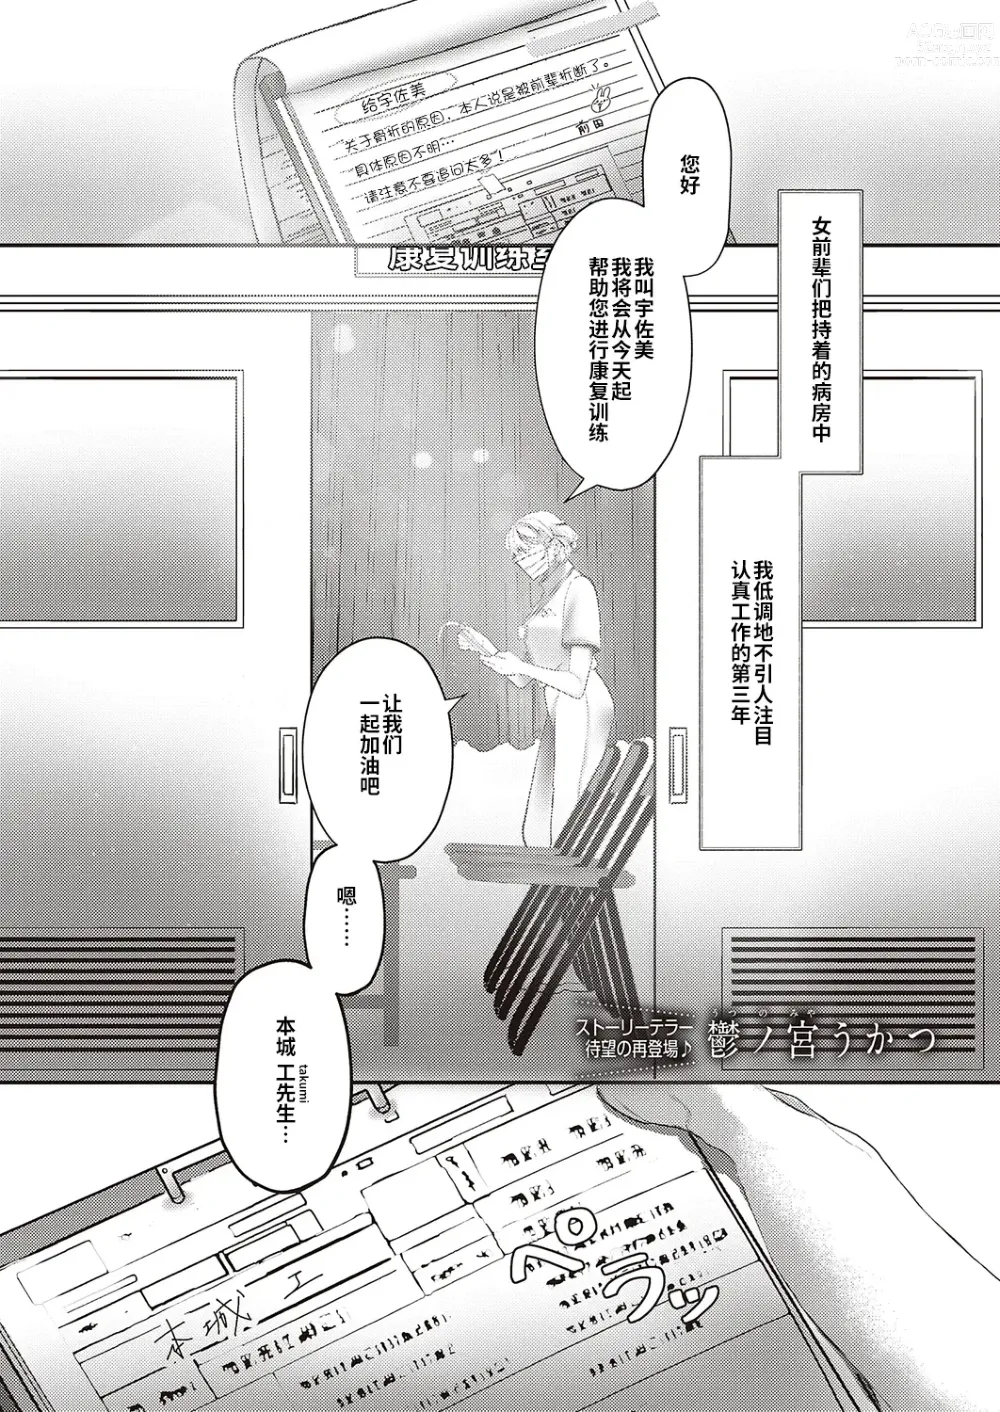 Page 1 of manga Rehabili